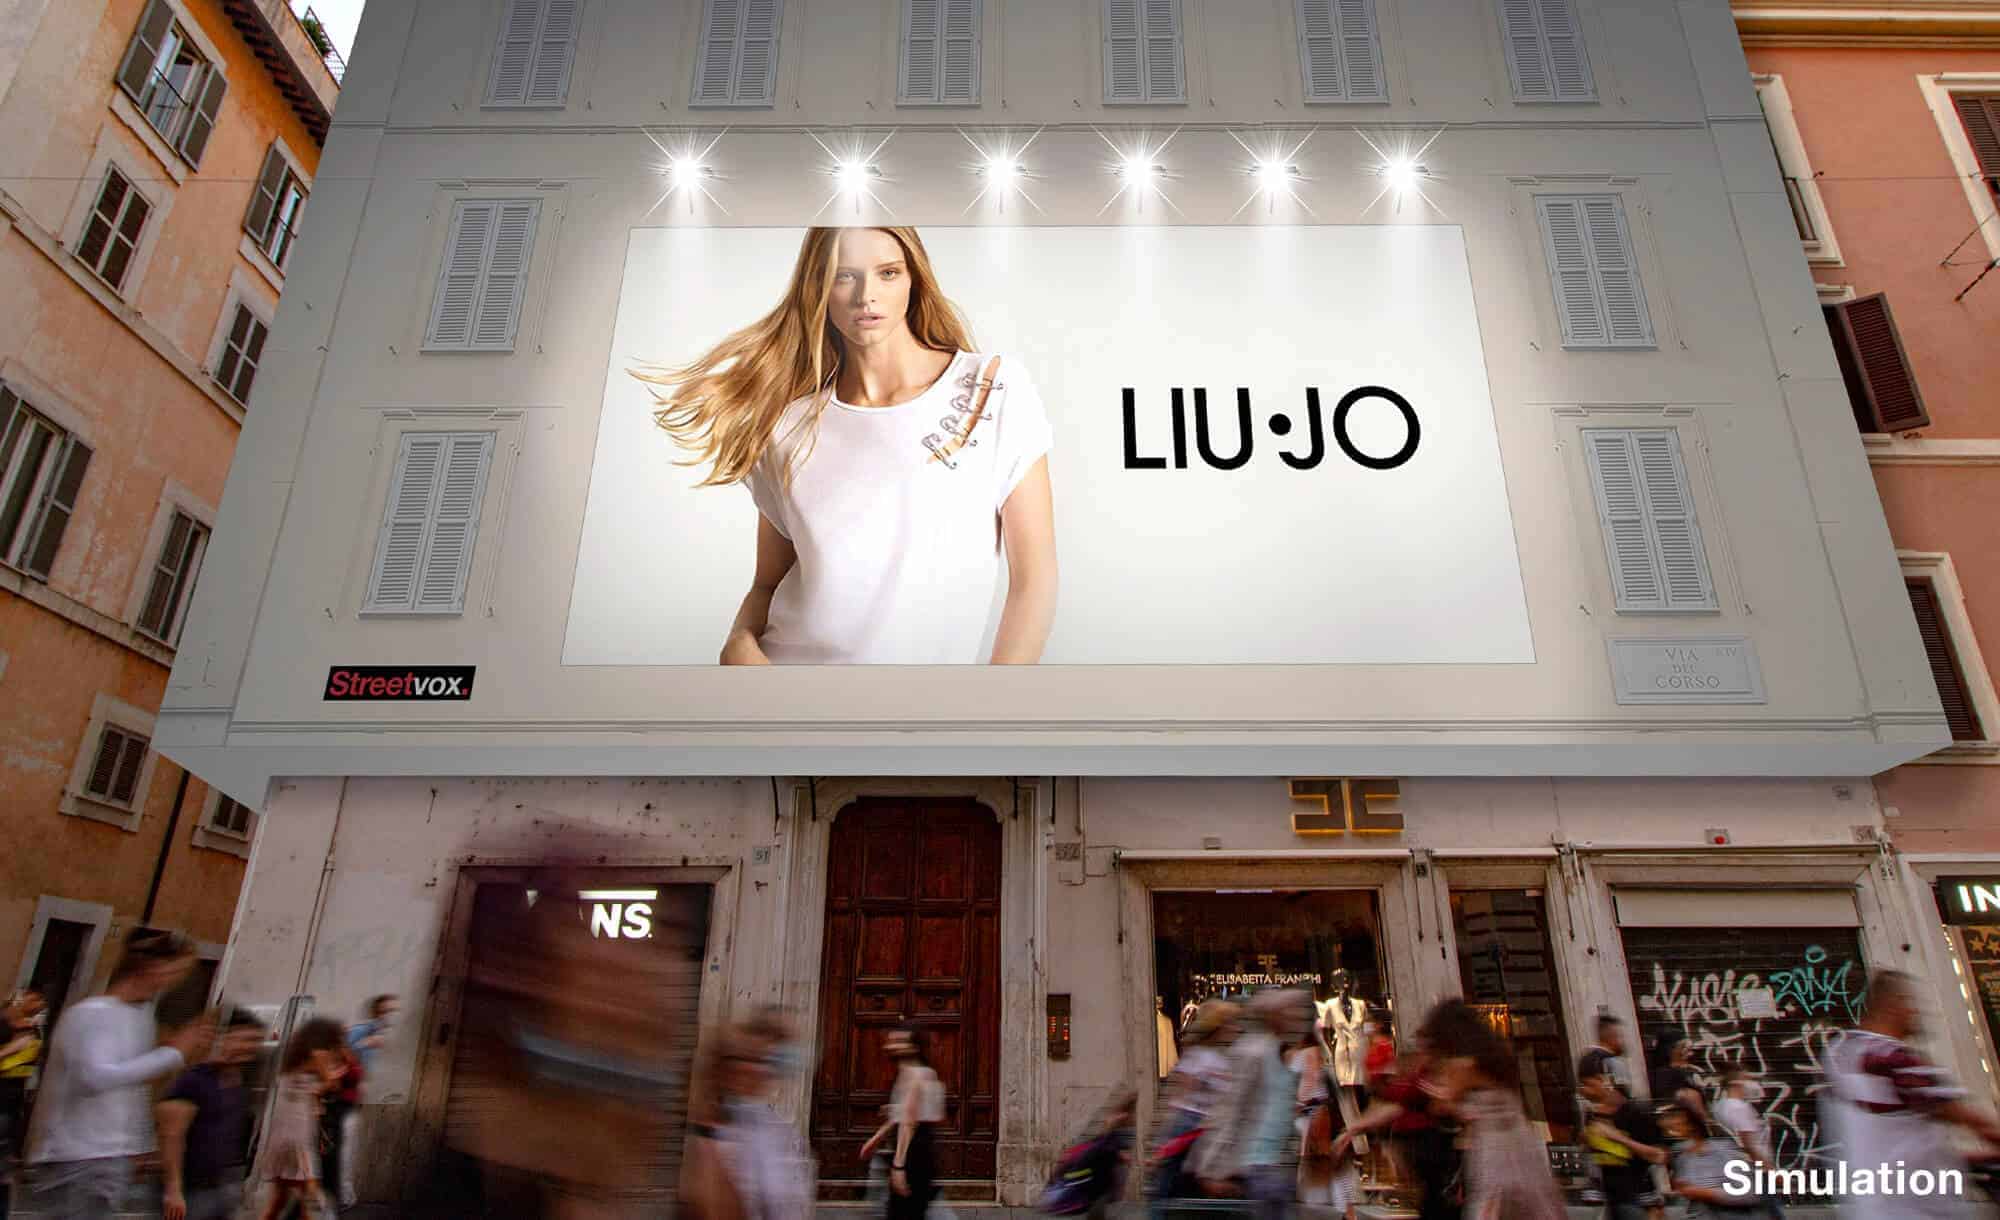 Maxi Affissione a Roma in Via del Corso 52 con Liu-Jo (Fashion)